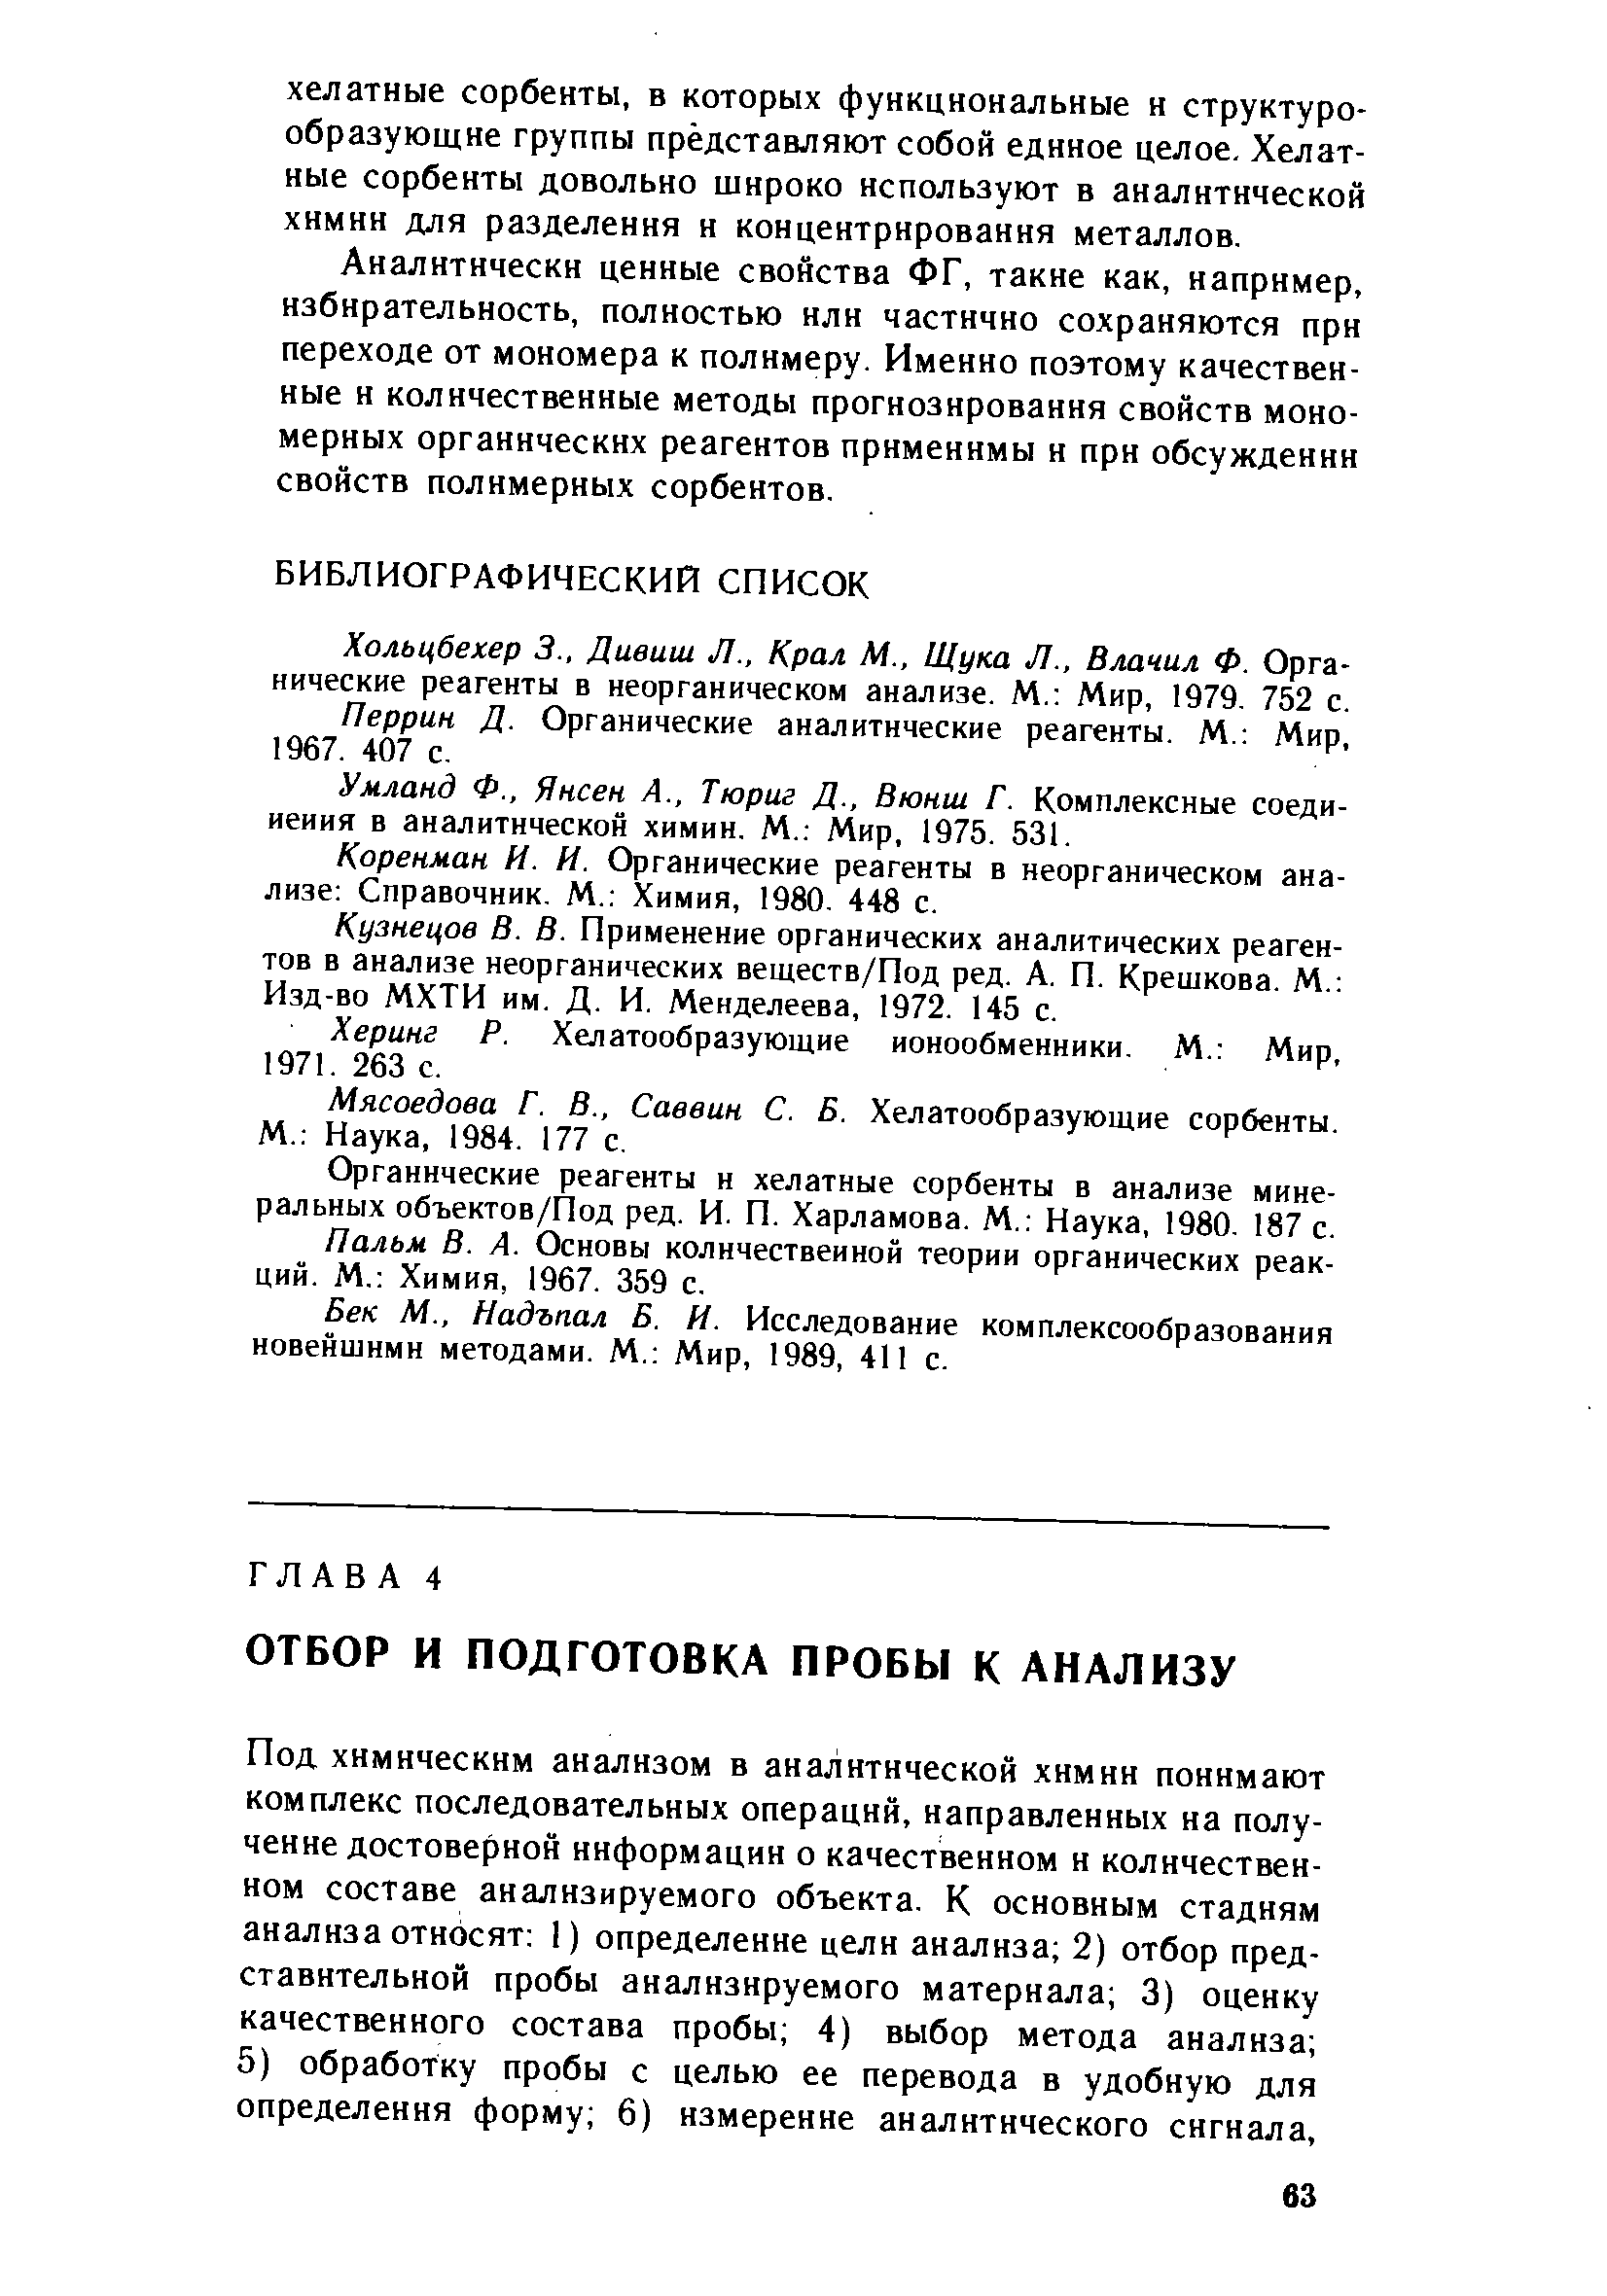 Перрин Д. Органические аналитические реагенты. М. Мир, 1967. 407 с.